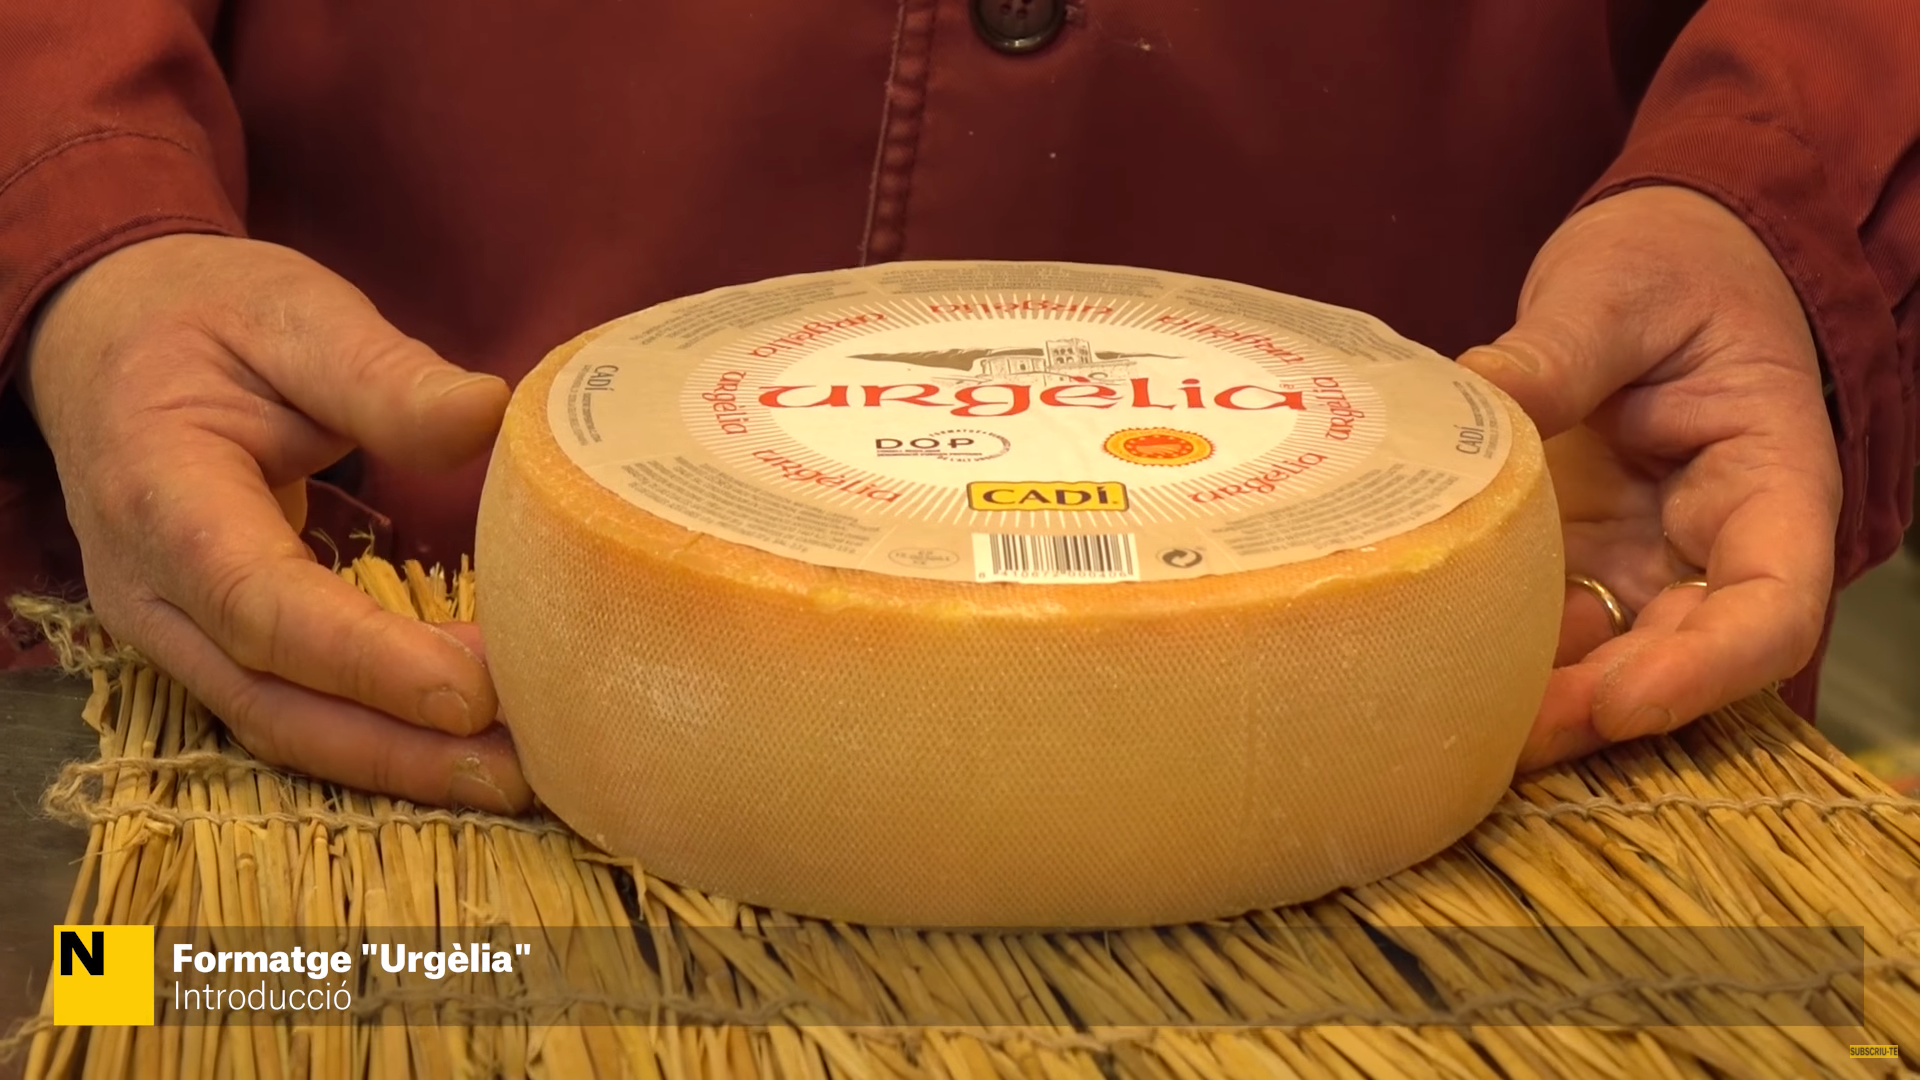 El queso Urgèlia gana el oro en los prestigiosos Sofi Awards